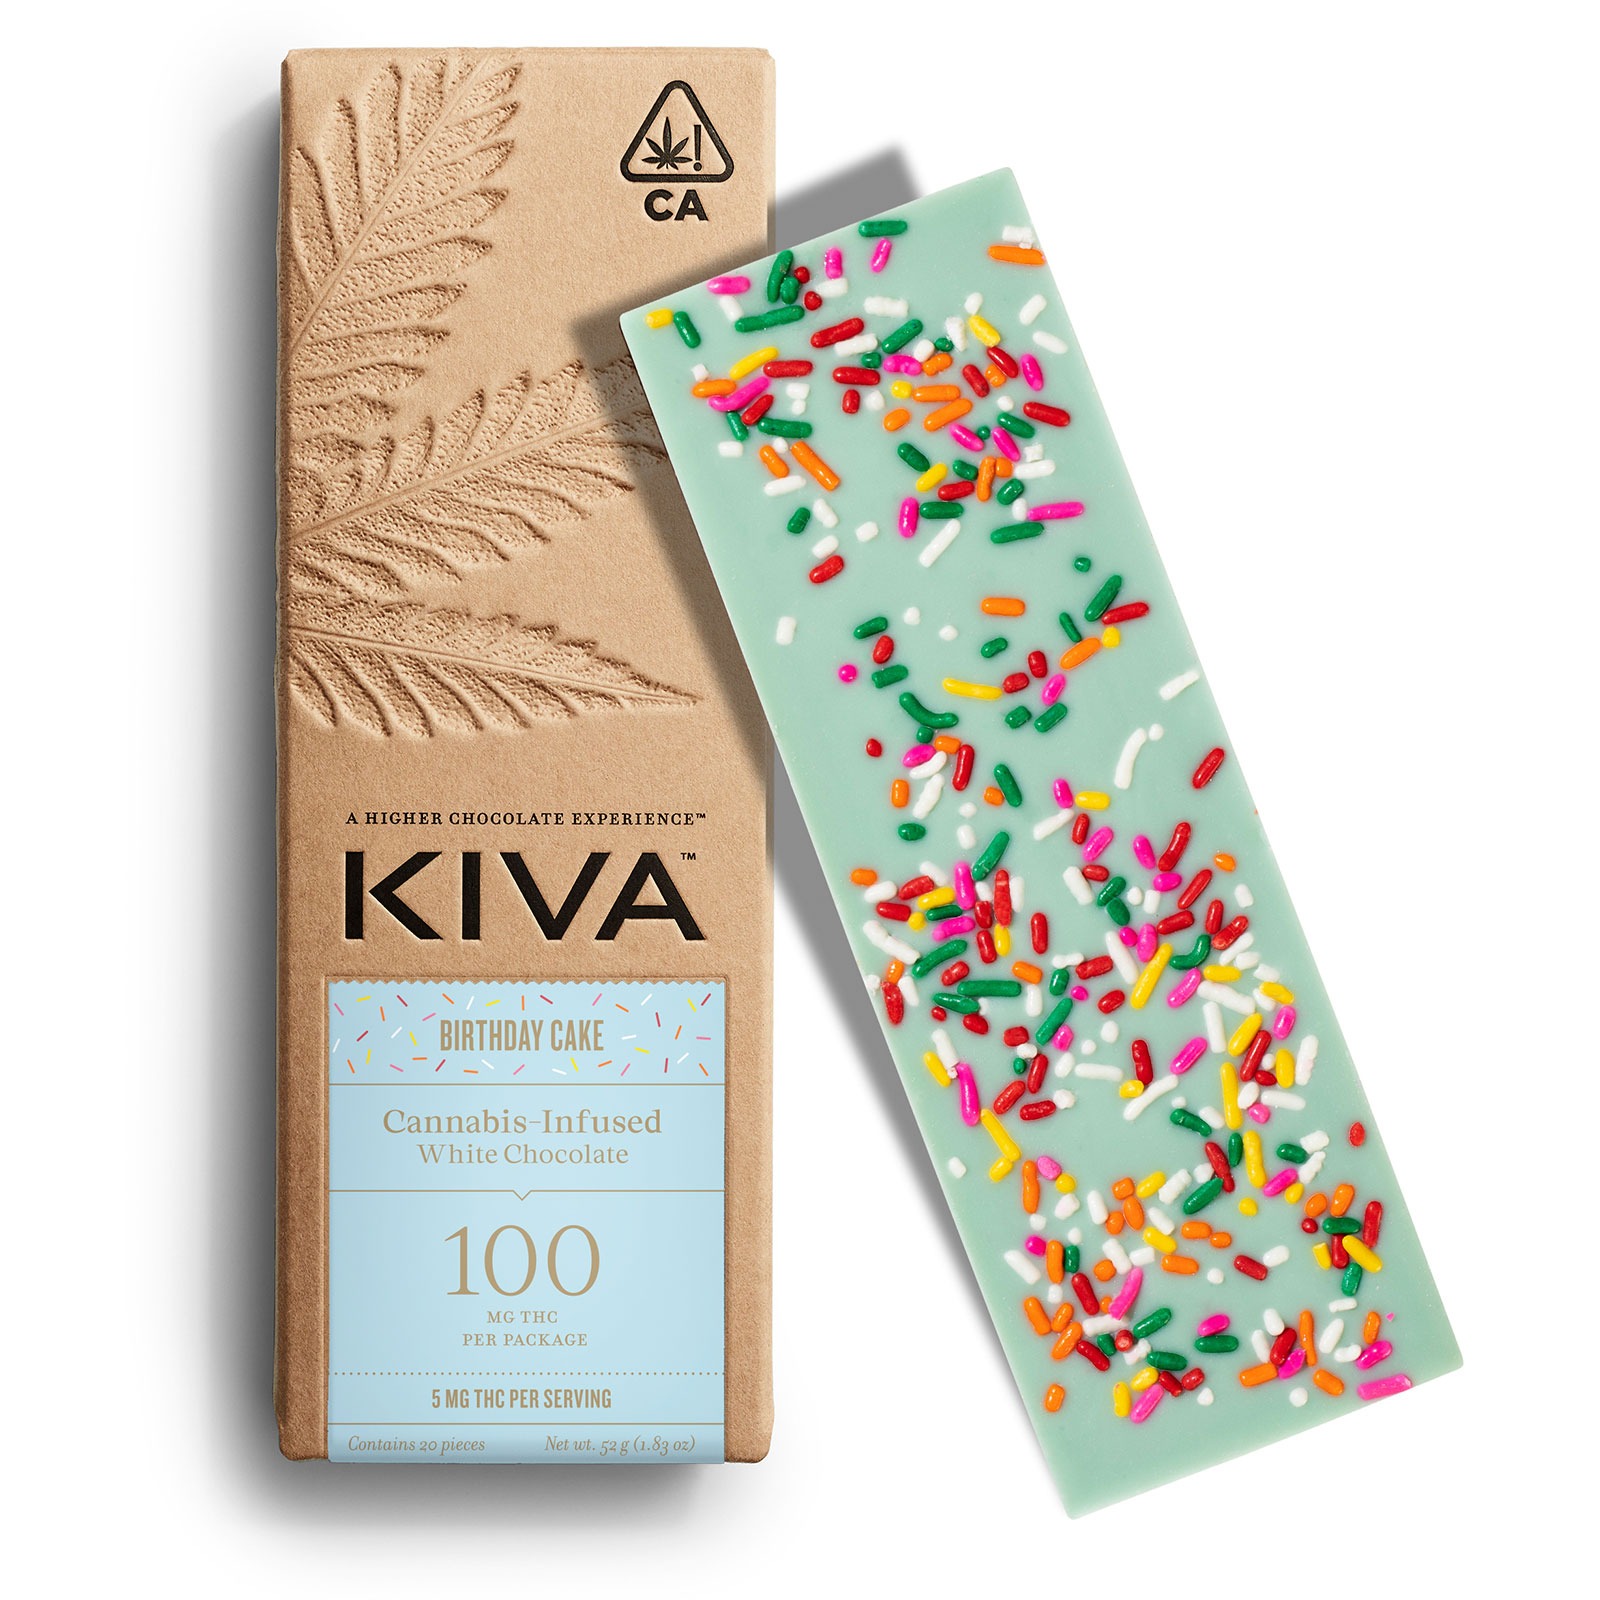 5mg Kiva 'Birthday Cake' White Chocolate Bar 100mg THC total